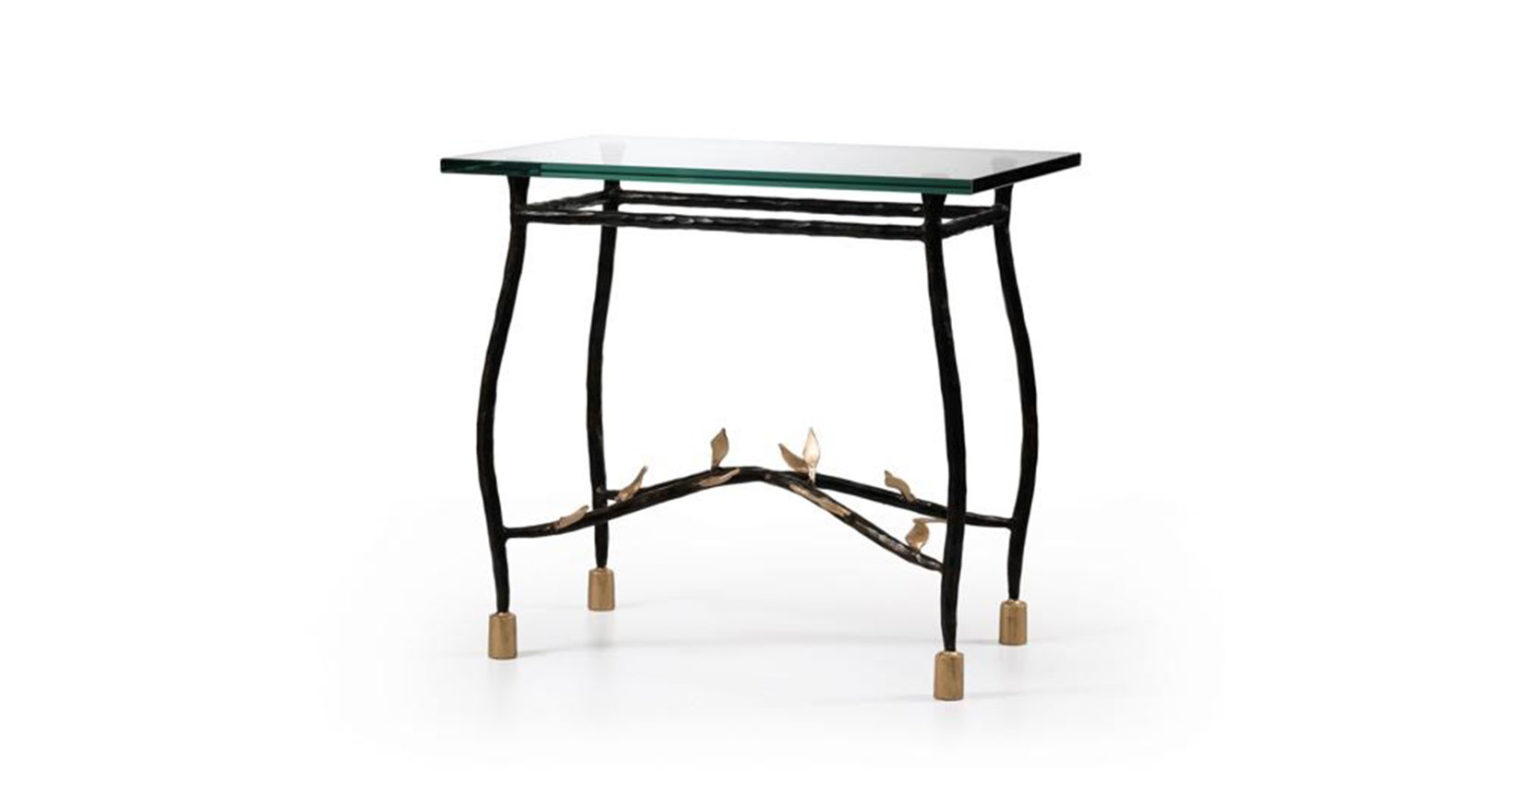 Garouste Bonetti, petite table rectangulaire de style baroque, pieds en fer forgé courbés ornés de petites feuilles, plateau en verre